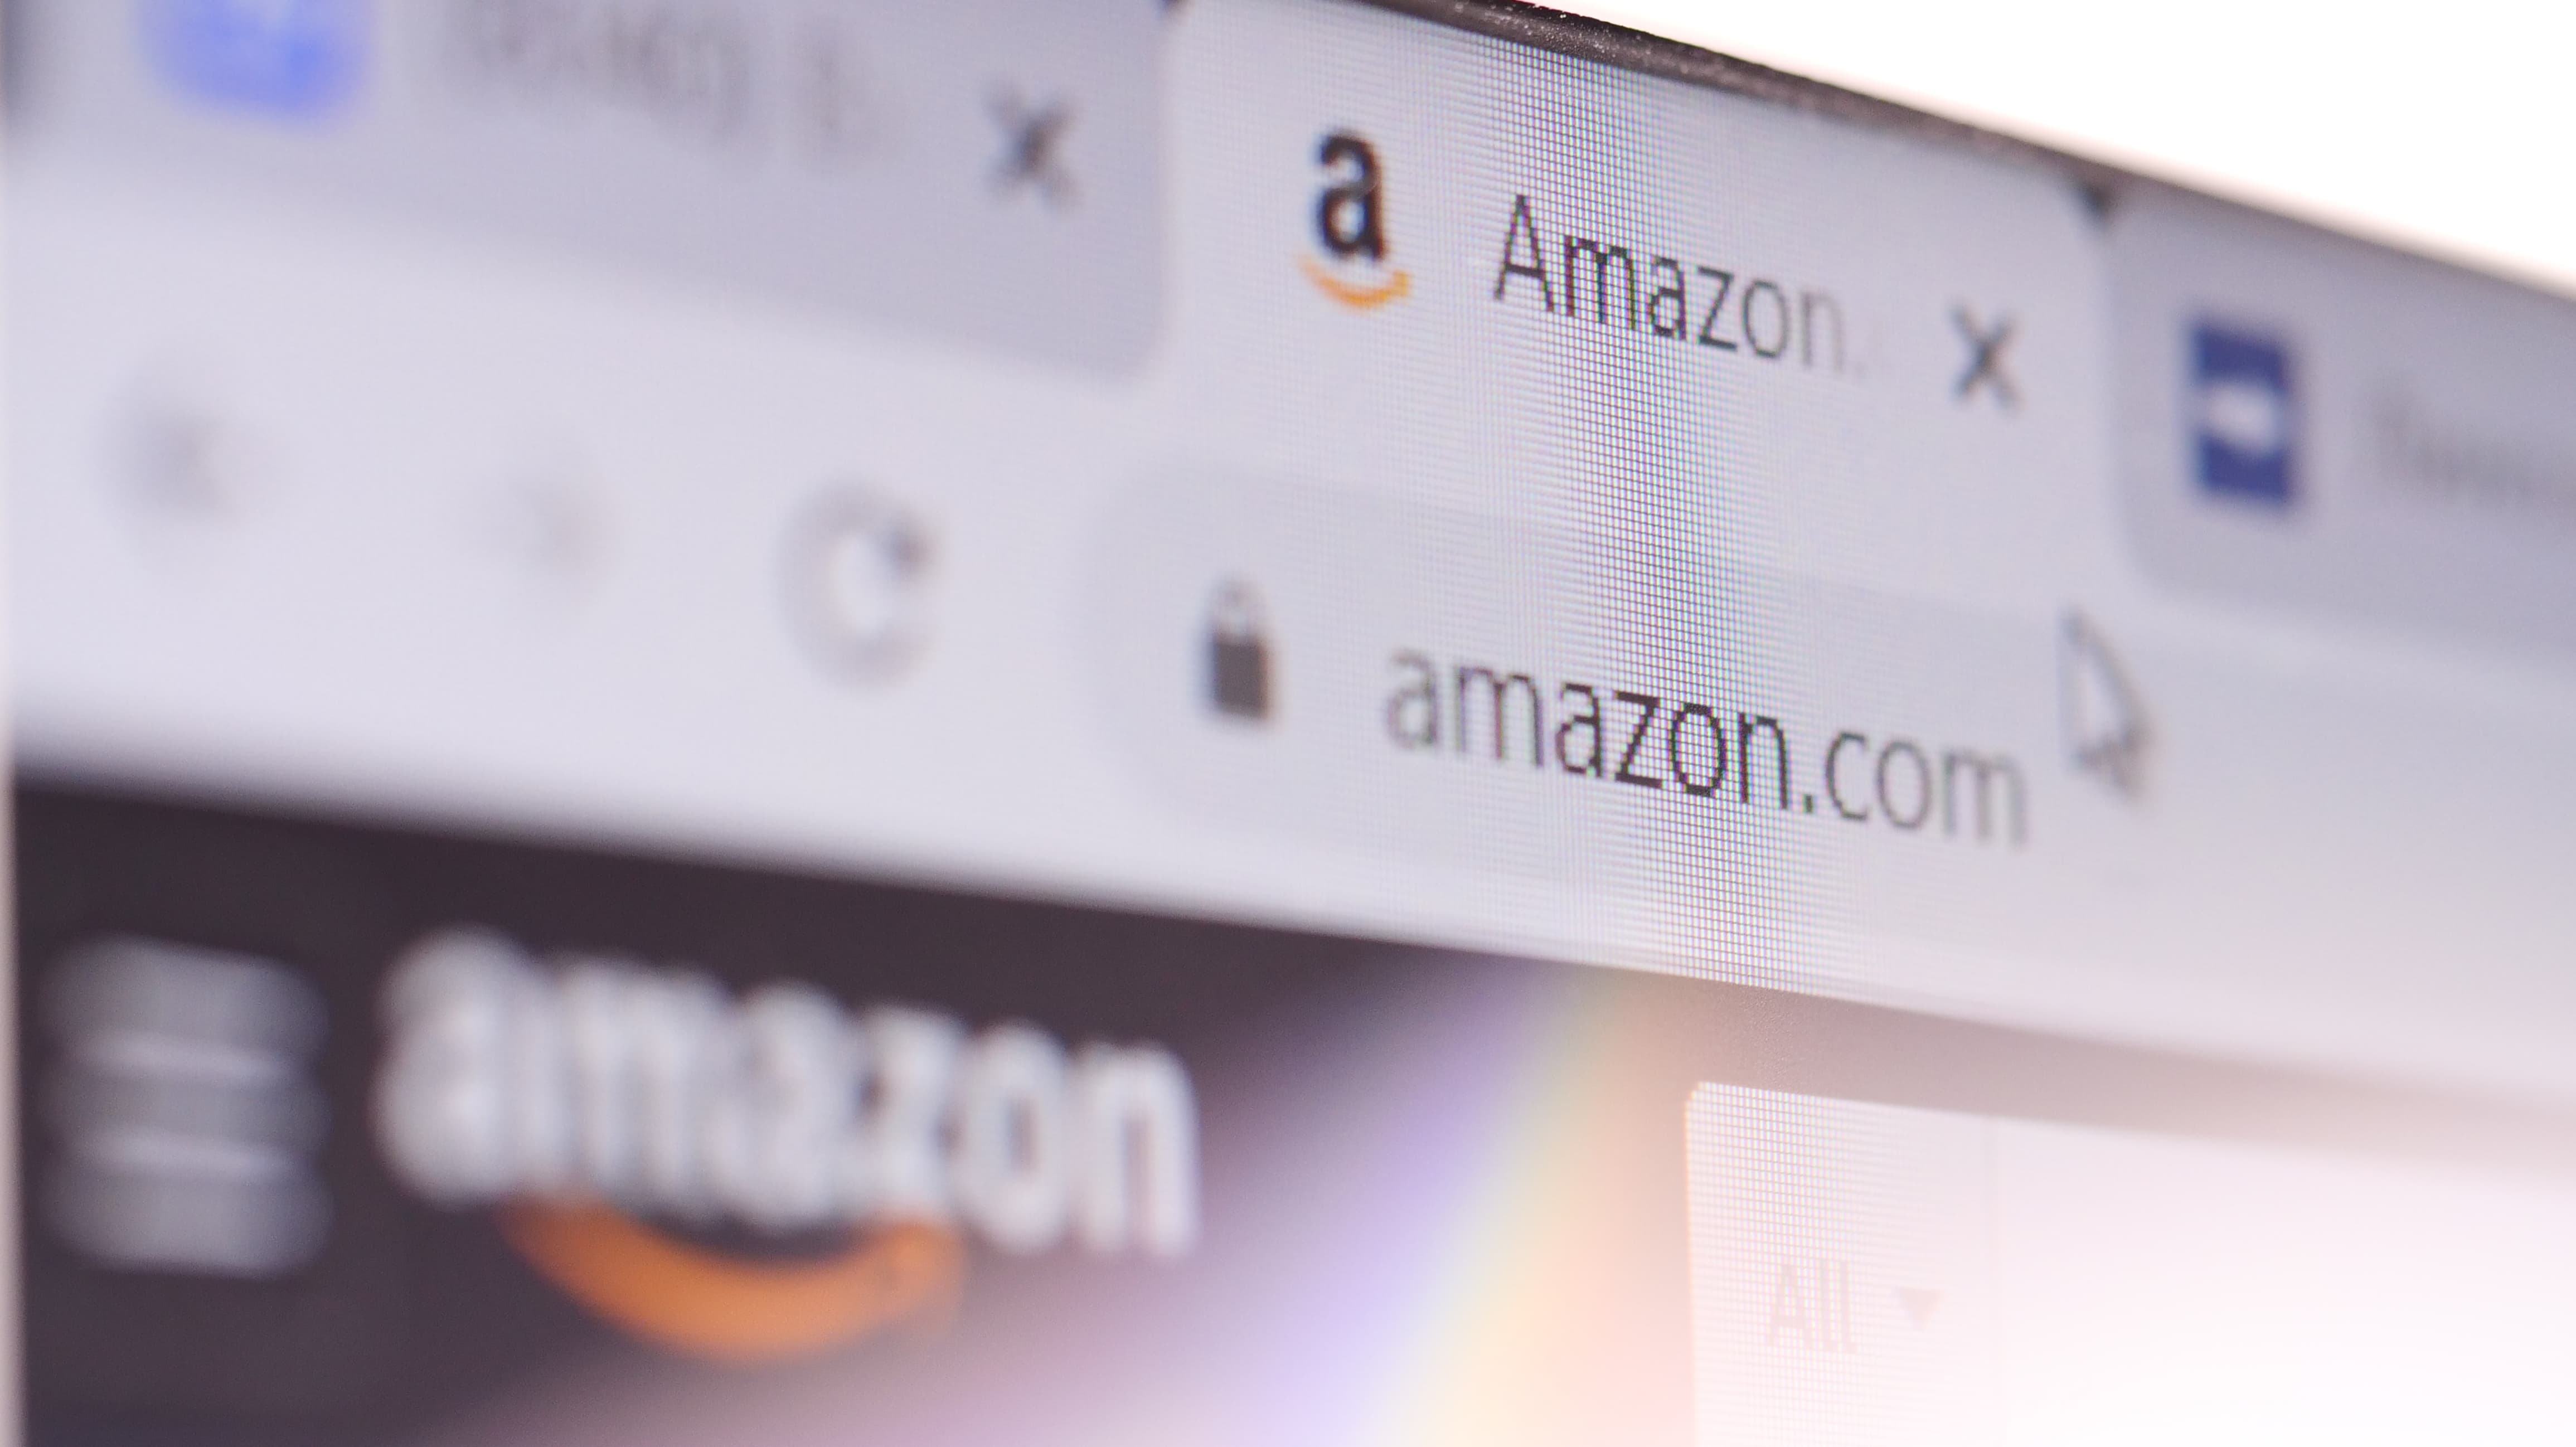 Amazon search image showing Amazon's vast marketplace